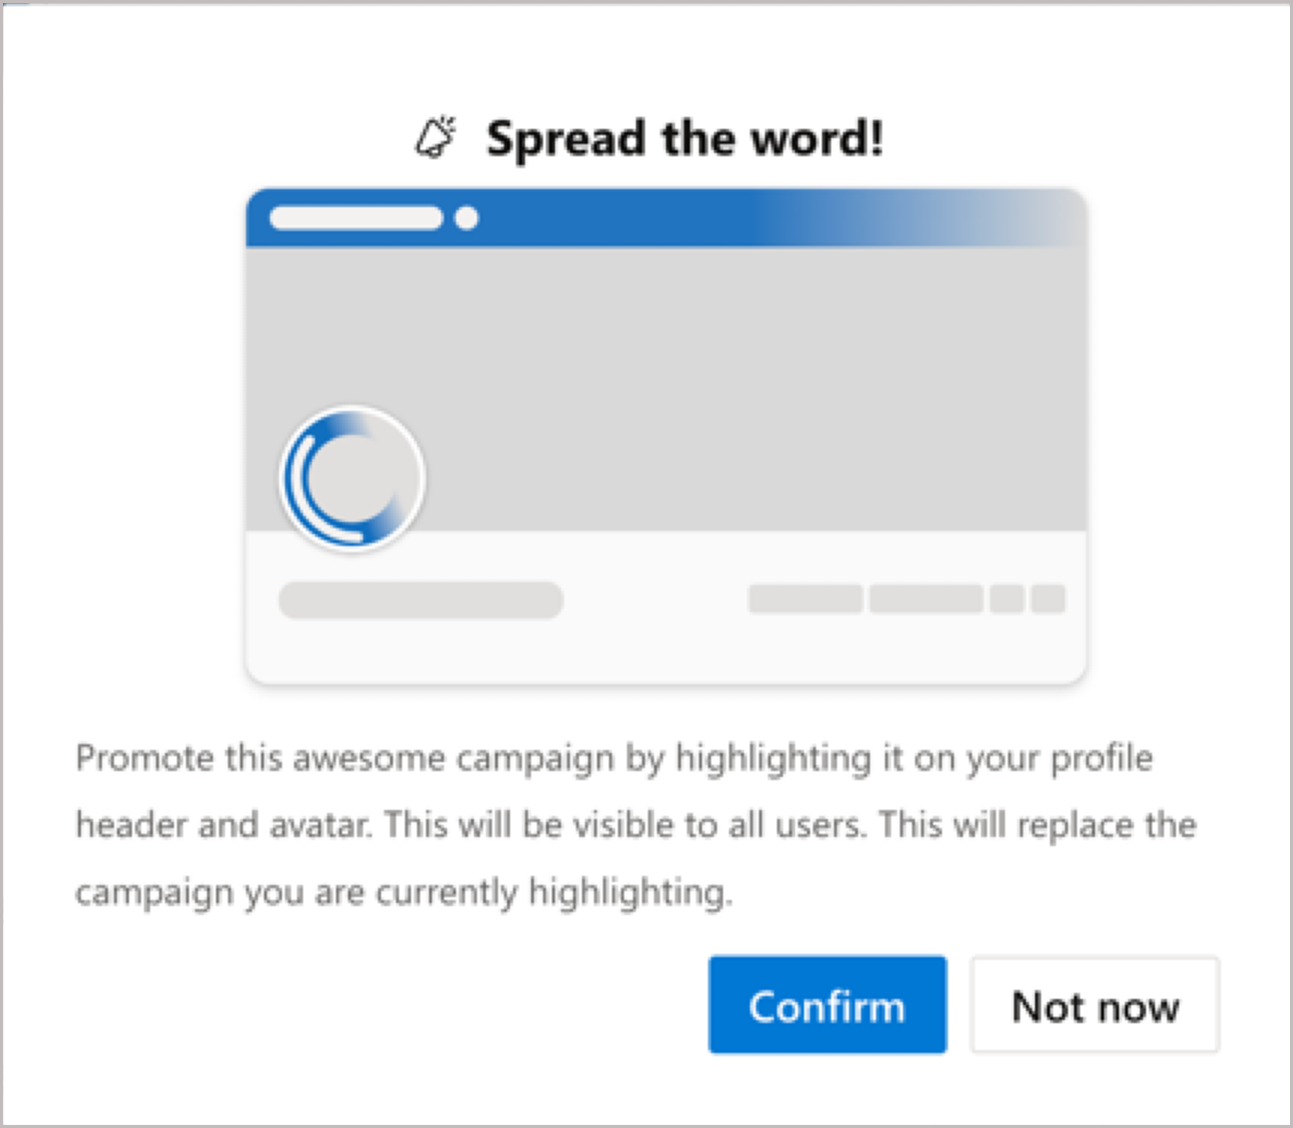 Når du deltager i en kampagne, bliver du spurgt, om du vil medtage en skråstreg på din profil.